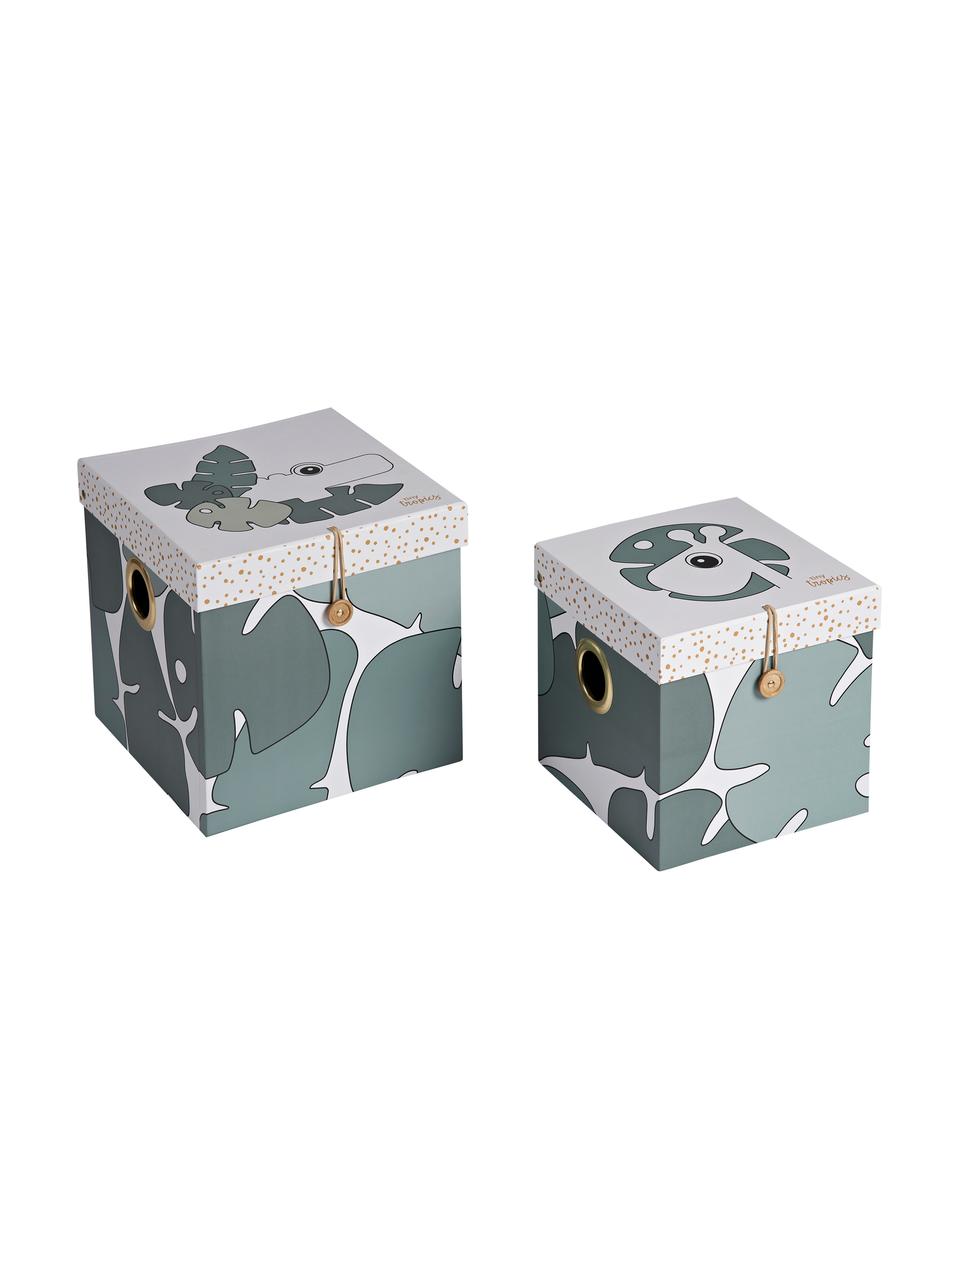 Aufbewahrungsboxen-Set Tiny Tropics, 2-tlg., Karton, laminiert, Grün, Set mit verschiedenen Größen